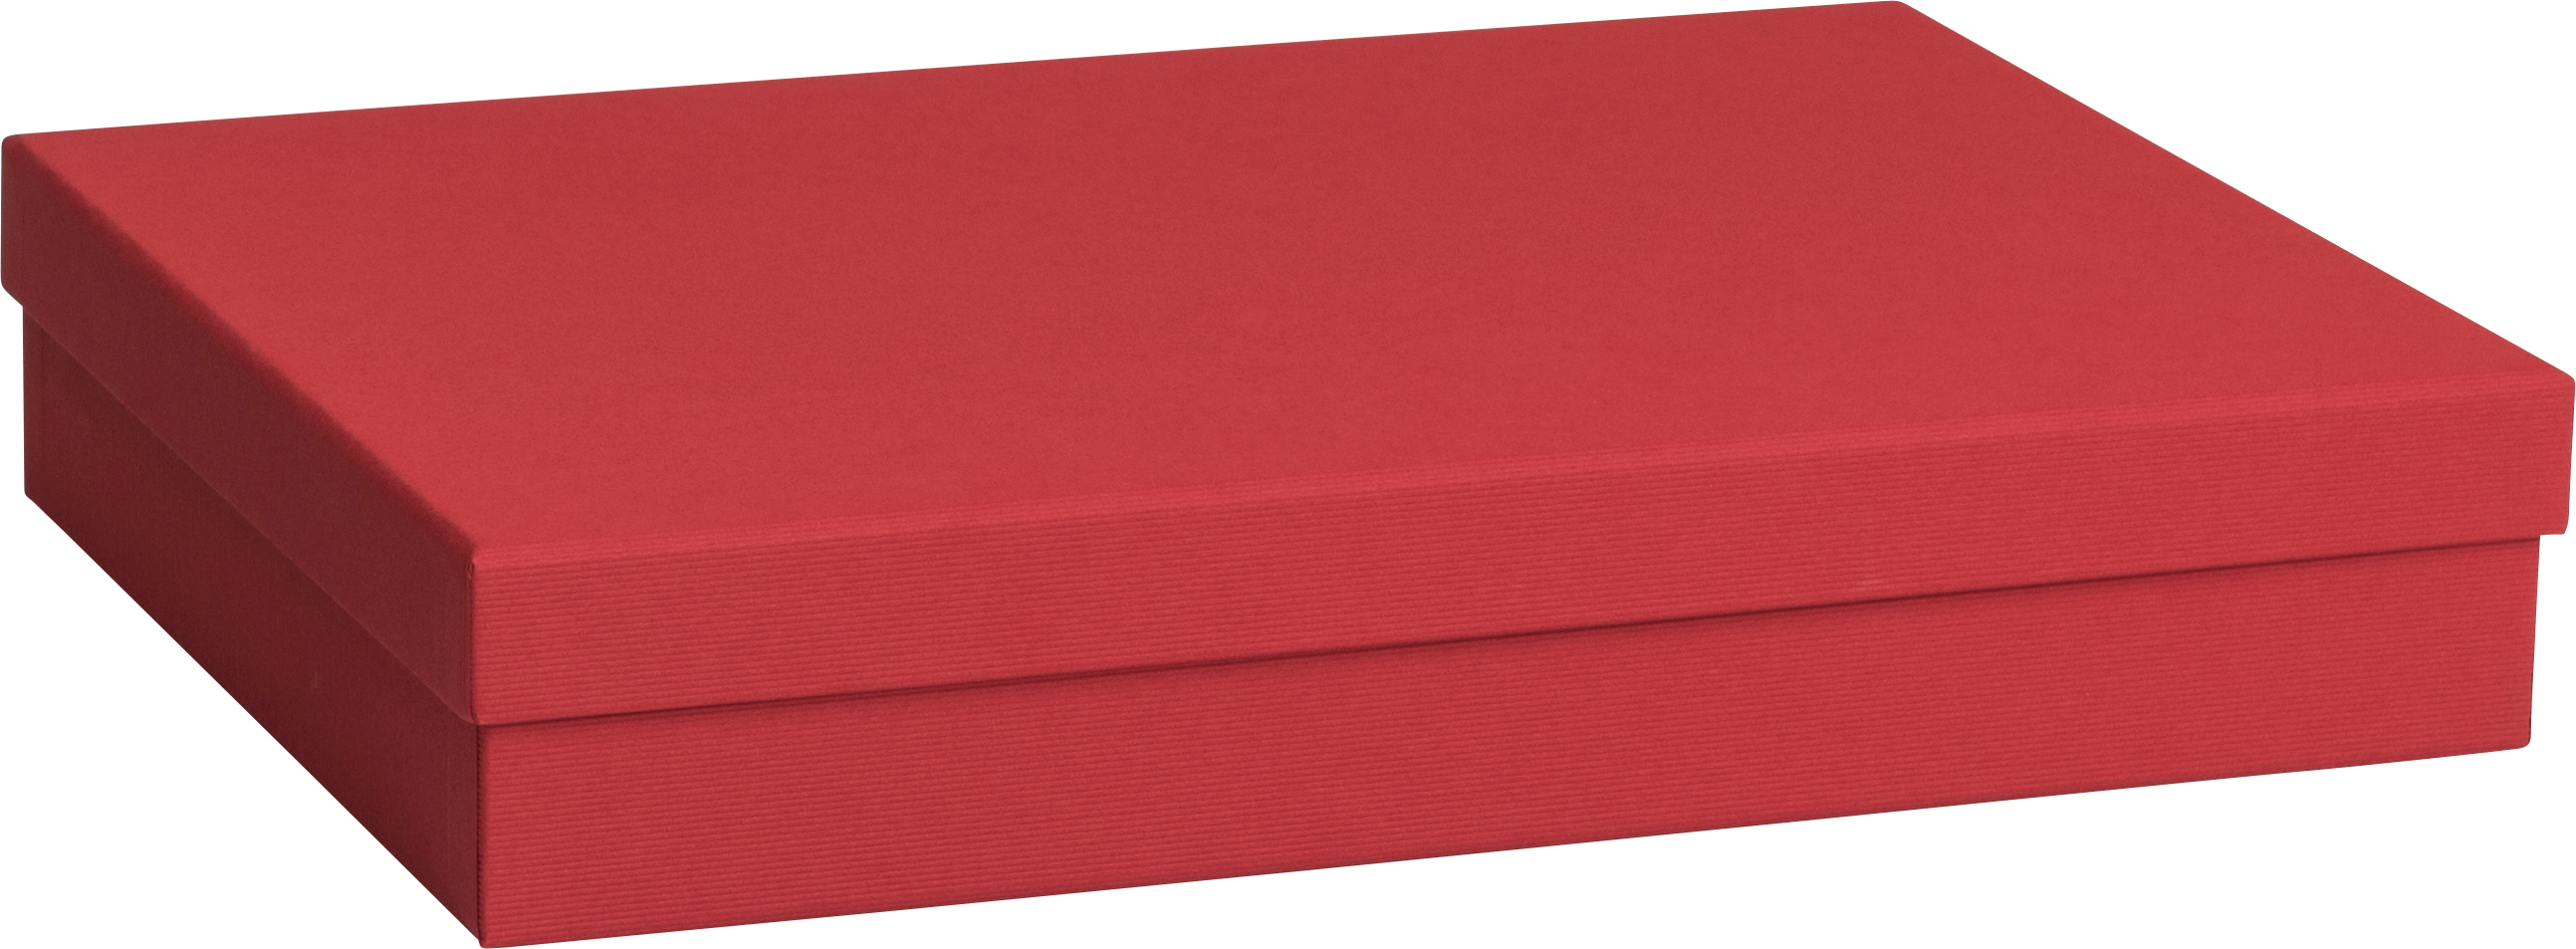 STEWO Boîte cadeau One Colour 2551784293 rouge foncé 24x33x6cm